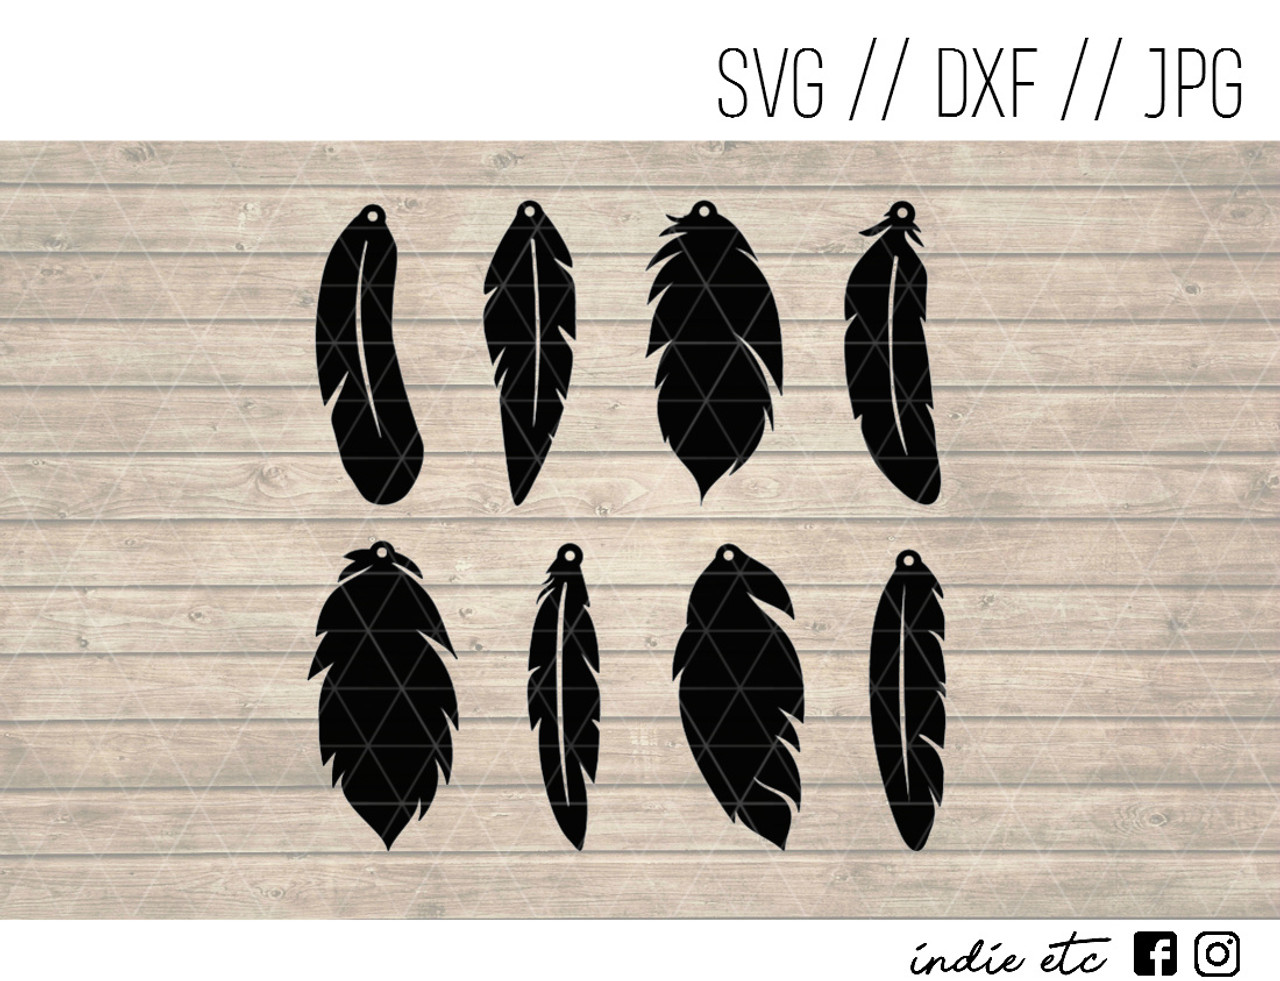 Download Feather Earrings Digital Art File (svg, dxf, jpeg, cut file)